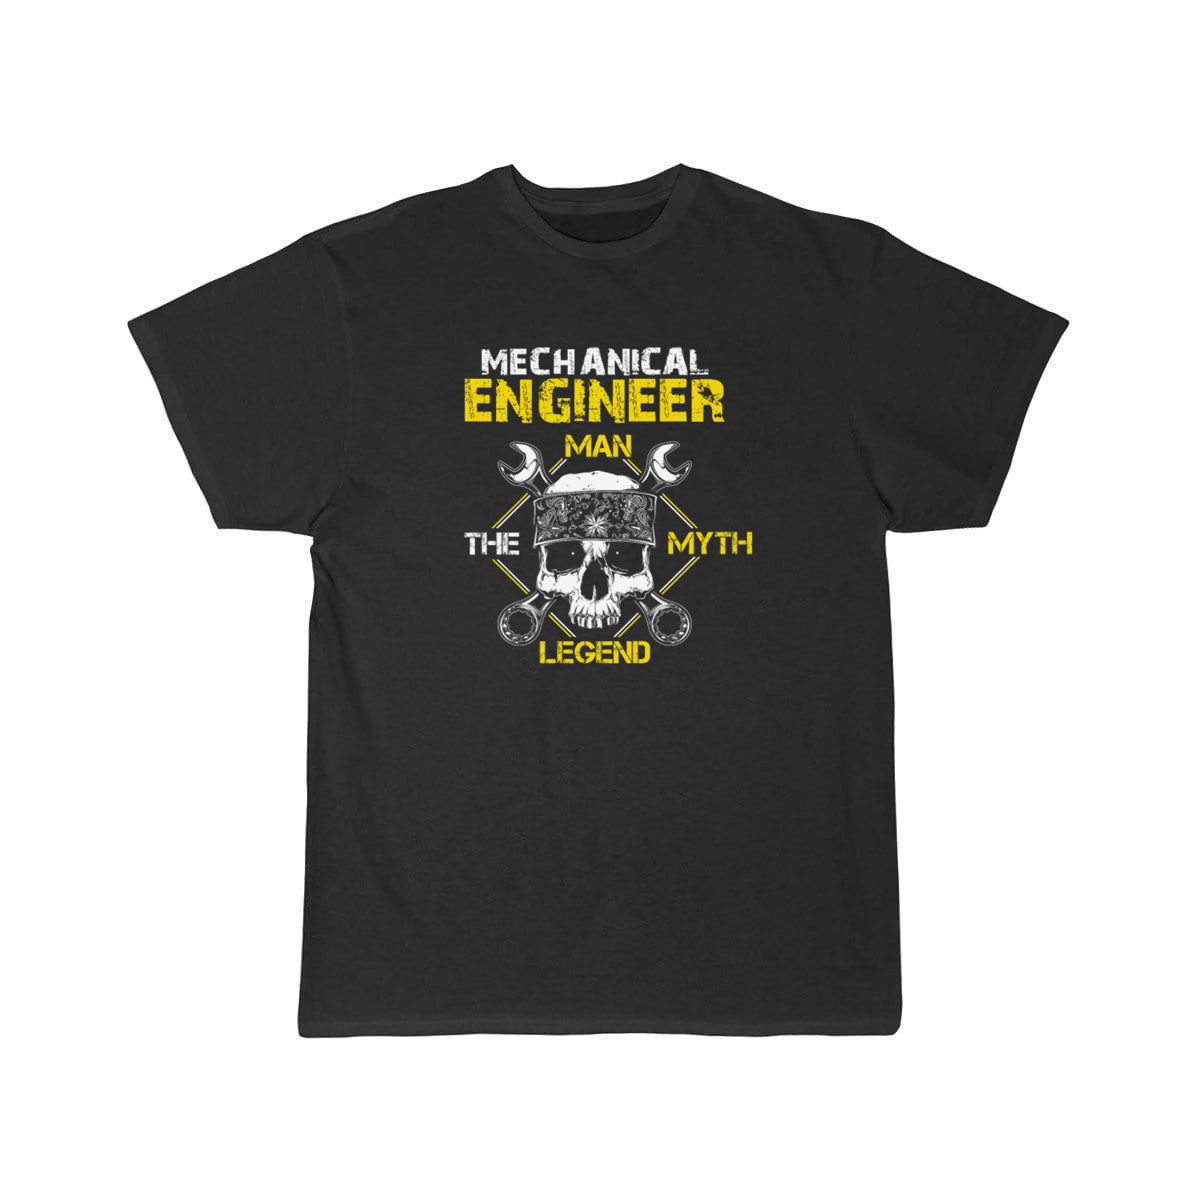 Mechanical engineer the legend - t shirt THE AV8R